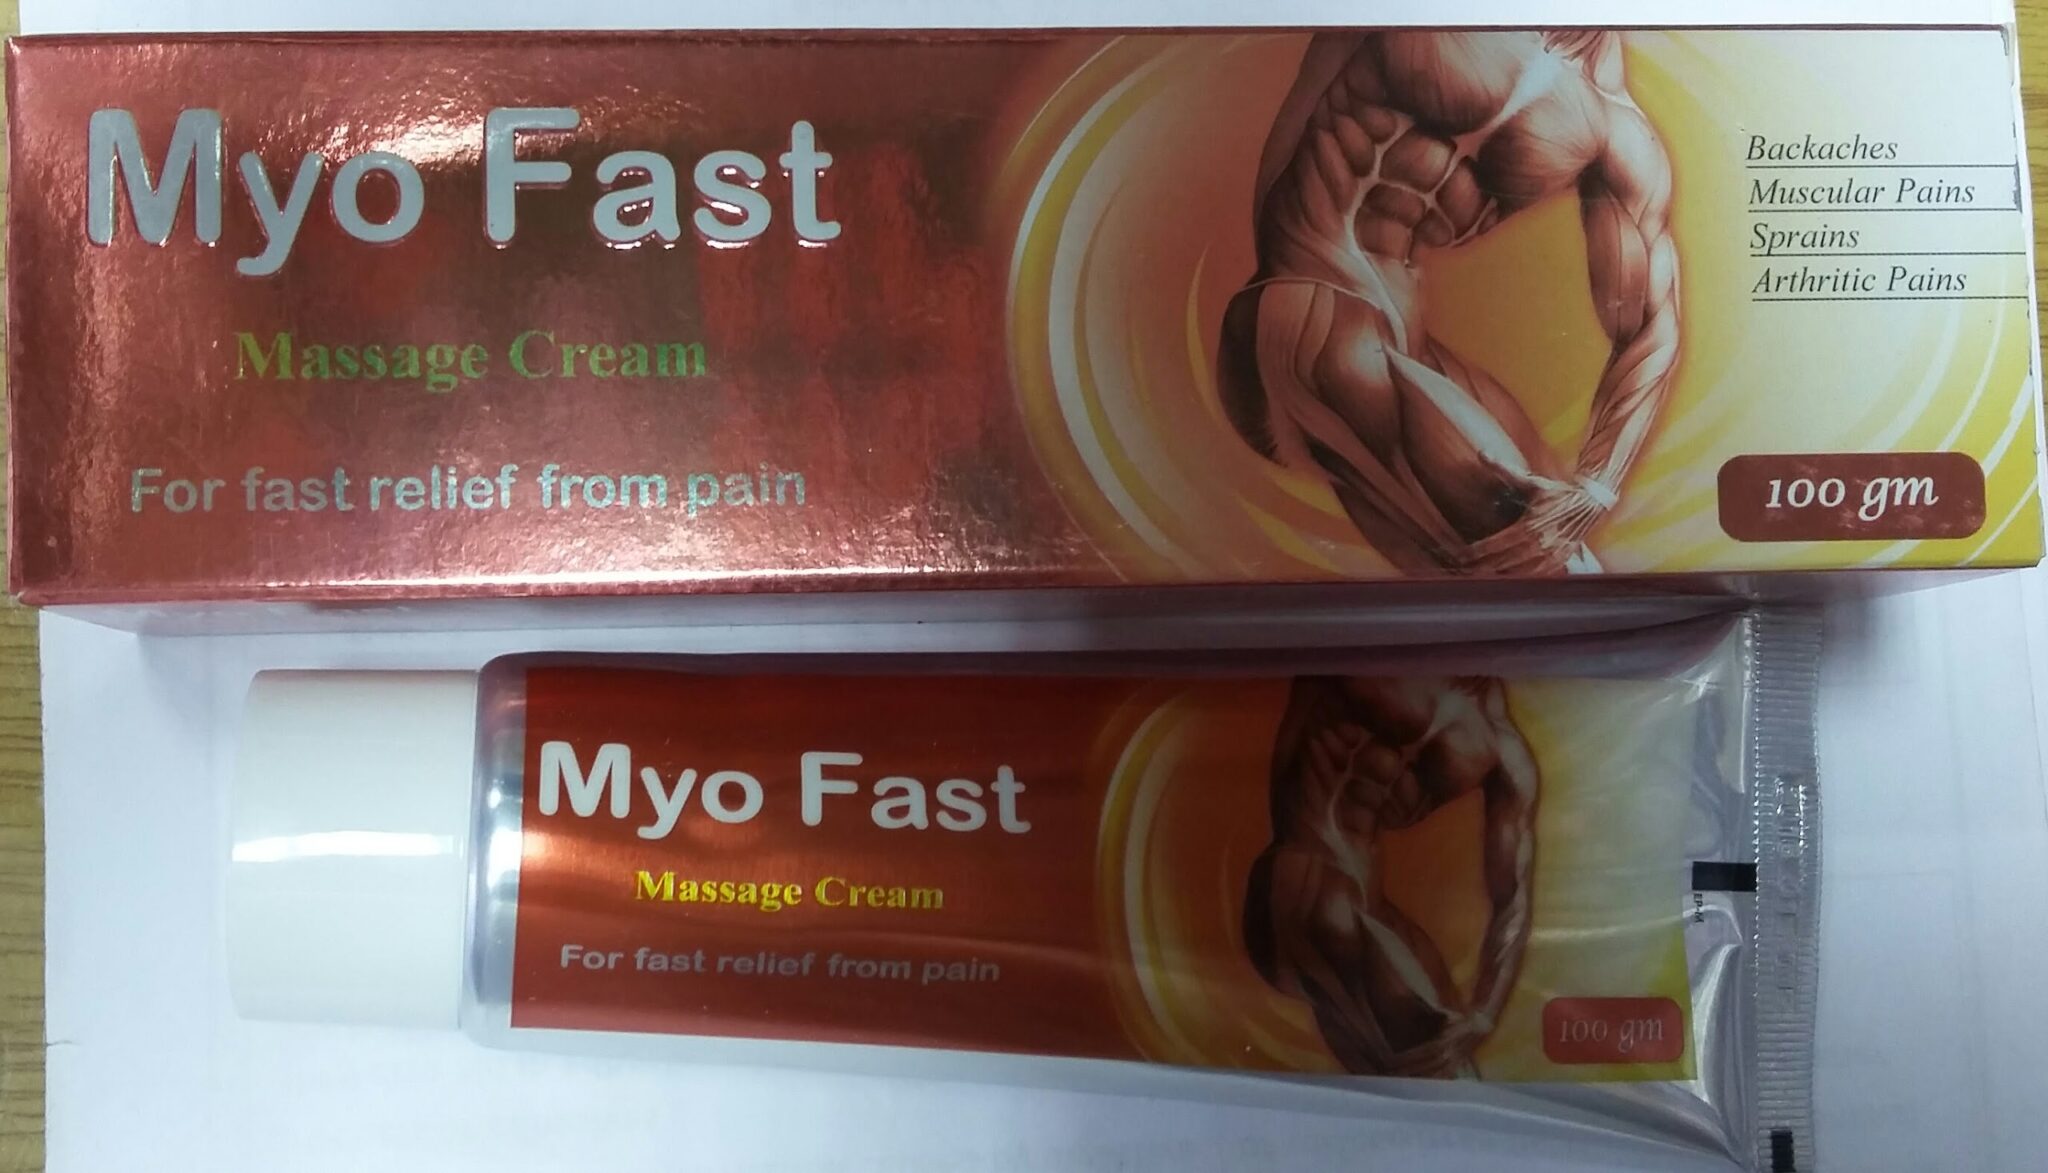 أسعار ودواعي استخدام كريم ميو فاست Myo Fast Massage لألم المفاصل والعضلات